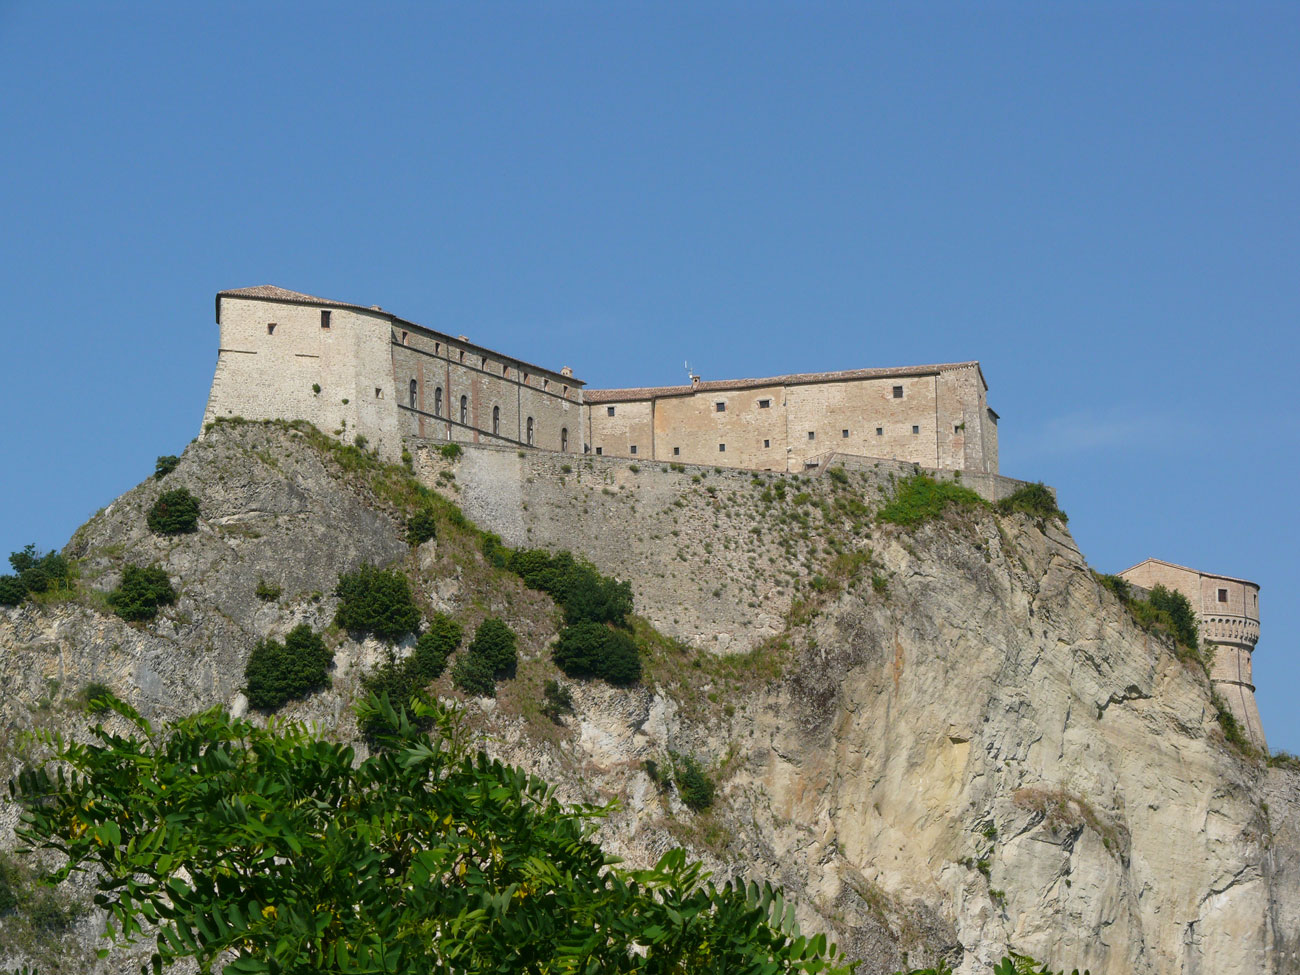 Fortezza di San Leo